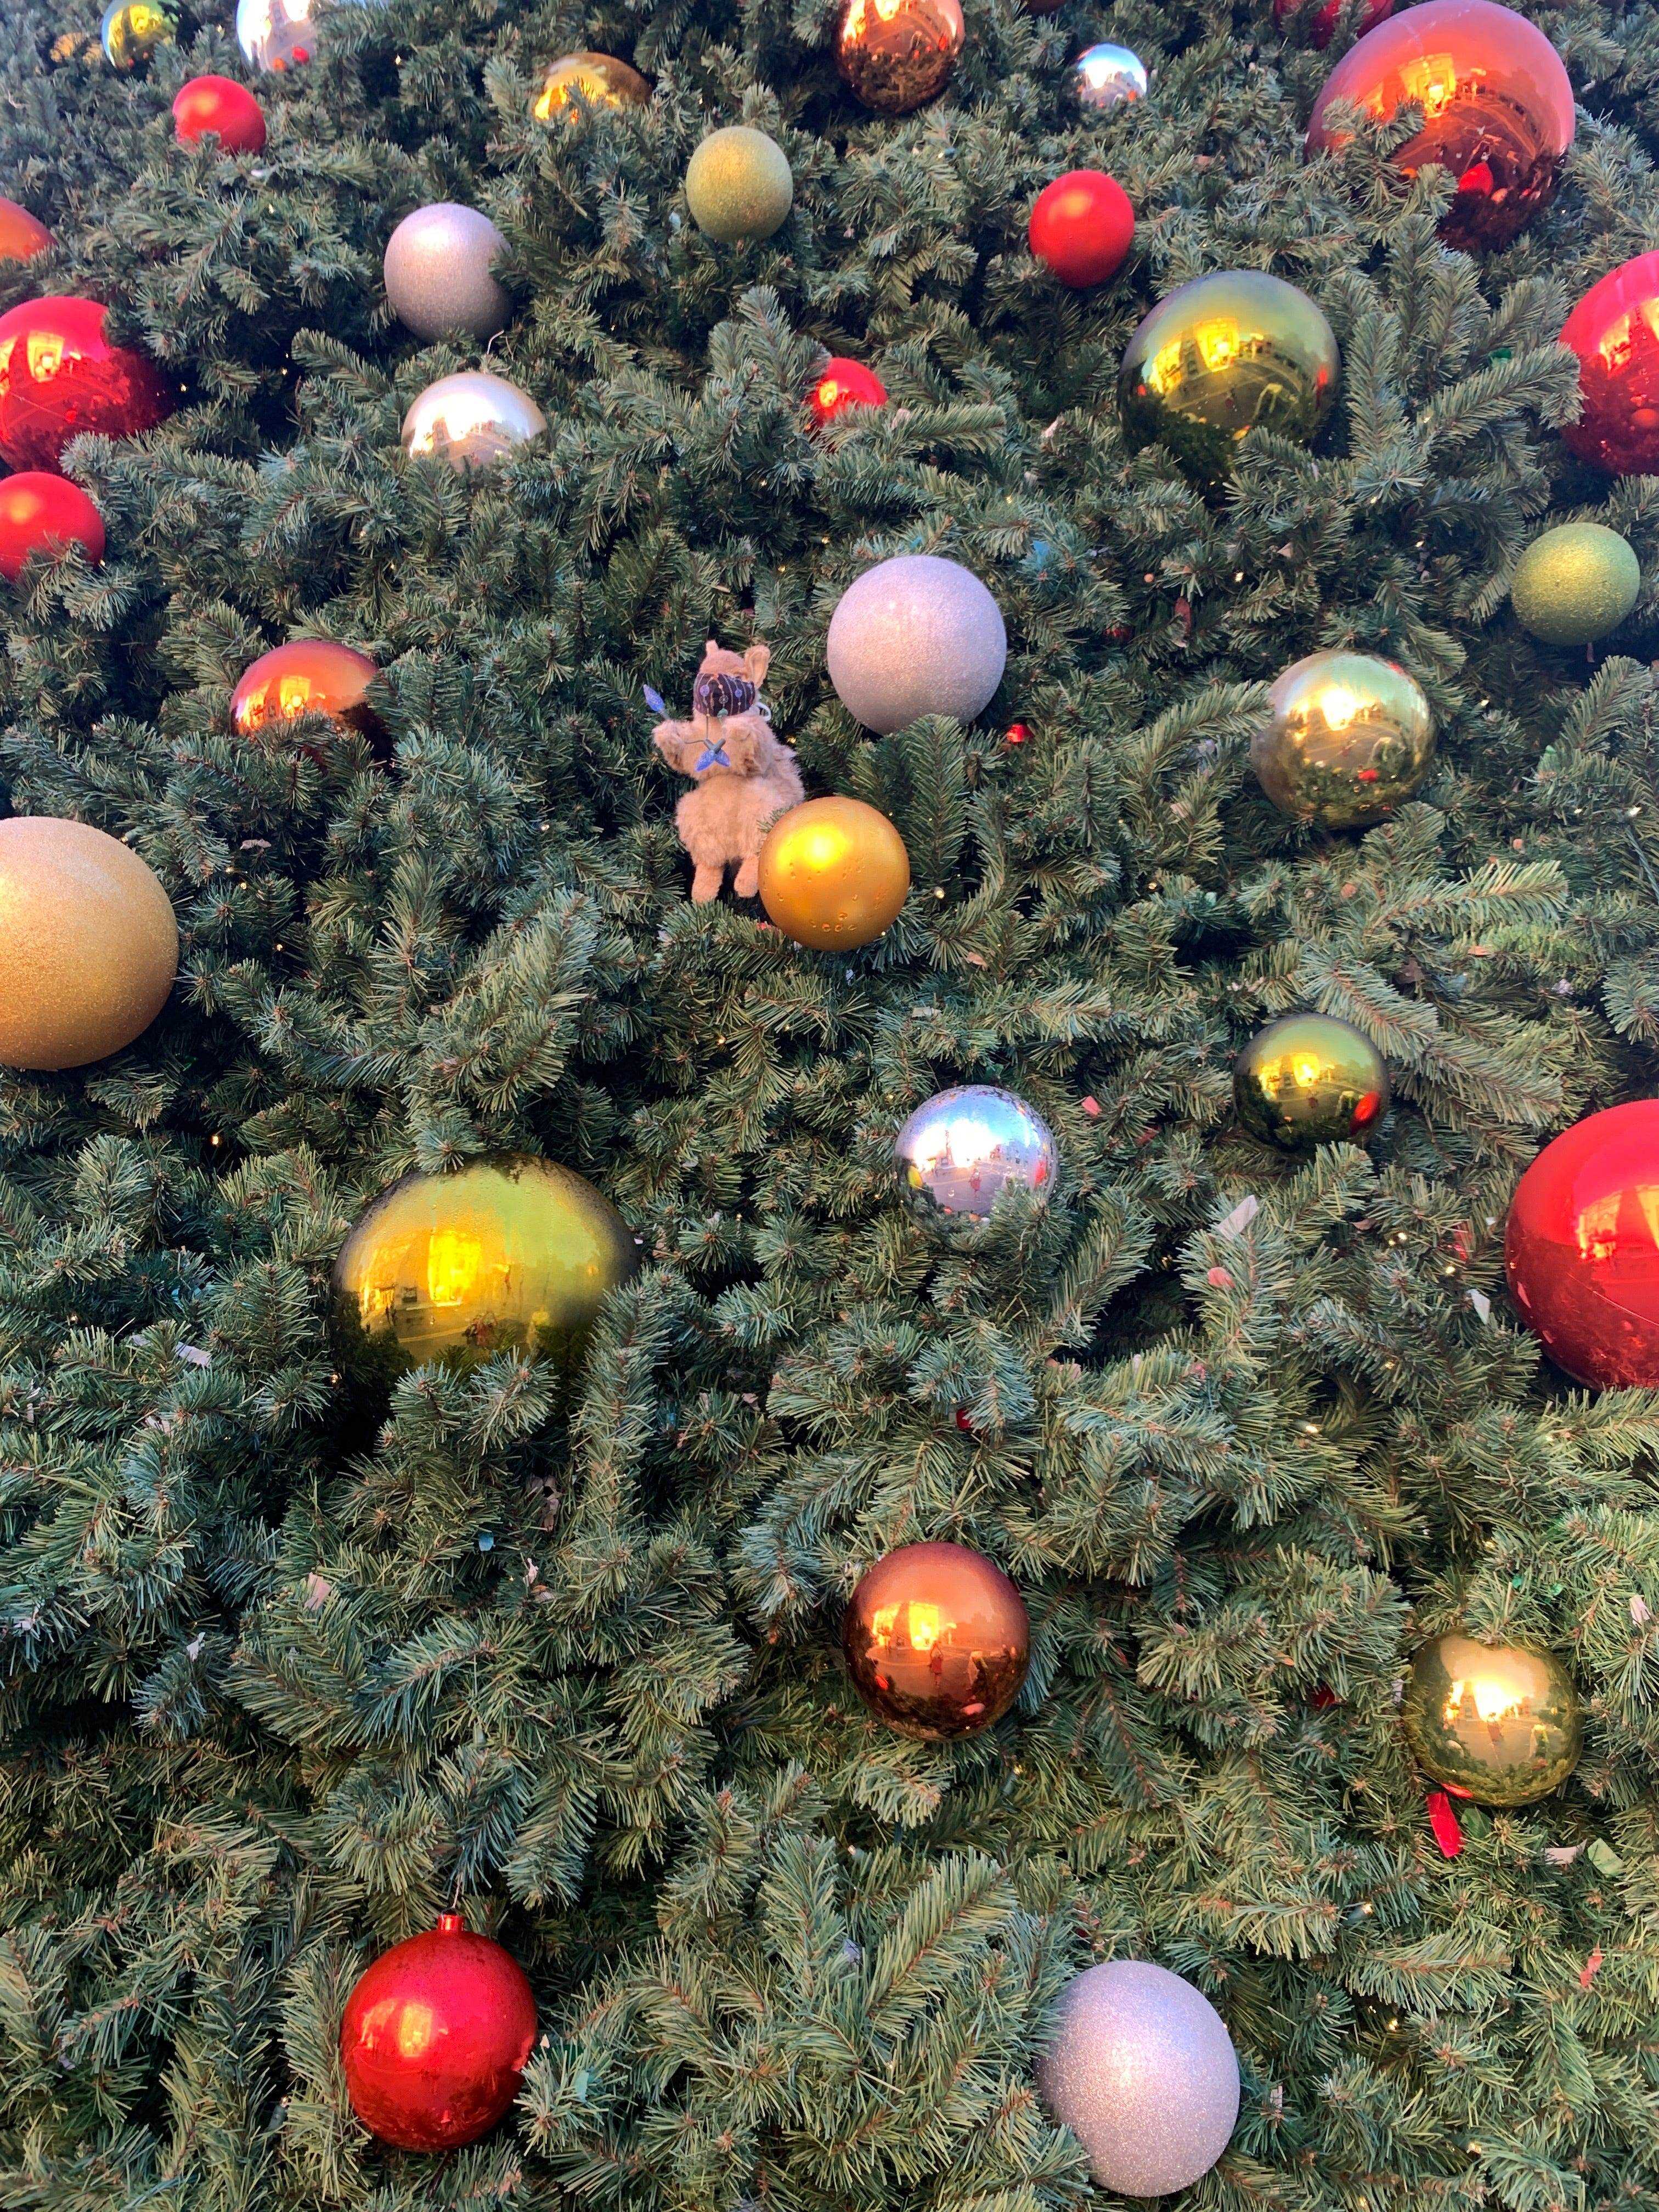 Earl das Eichhörnchen unter einer Reihe von Ornamenten an einem Baum.